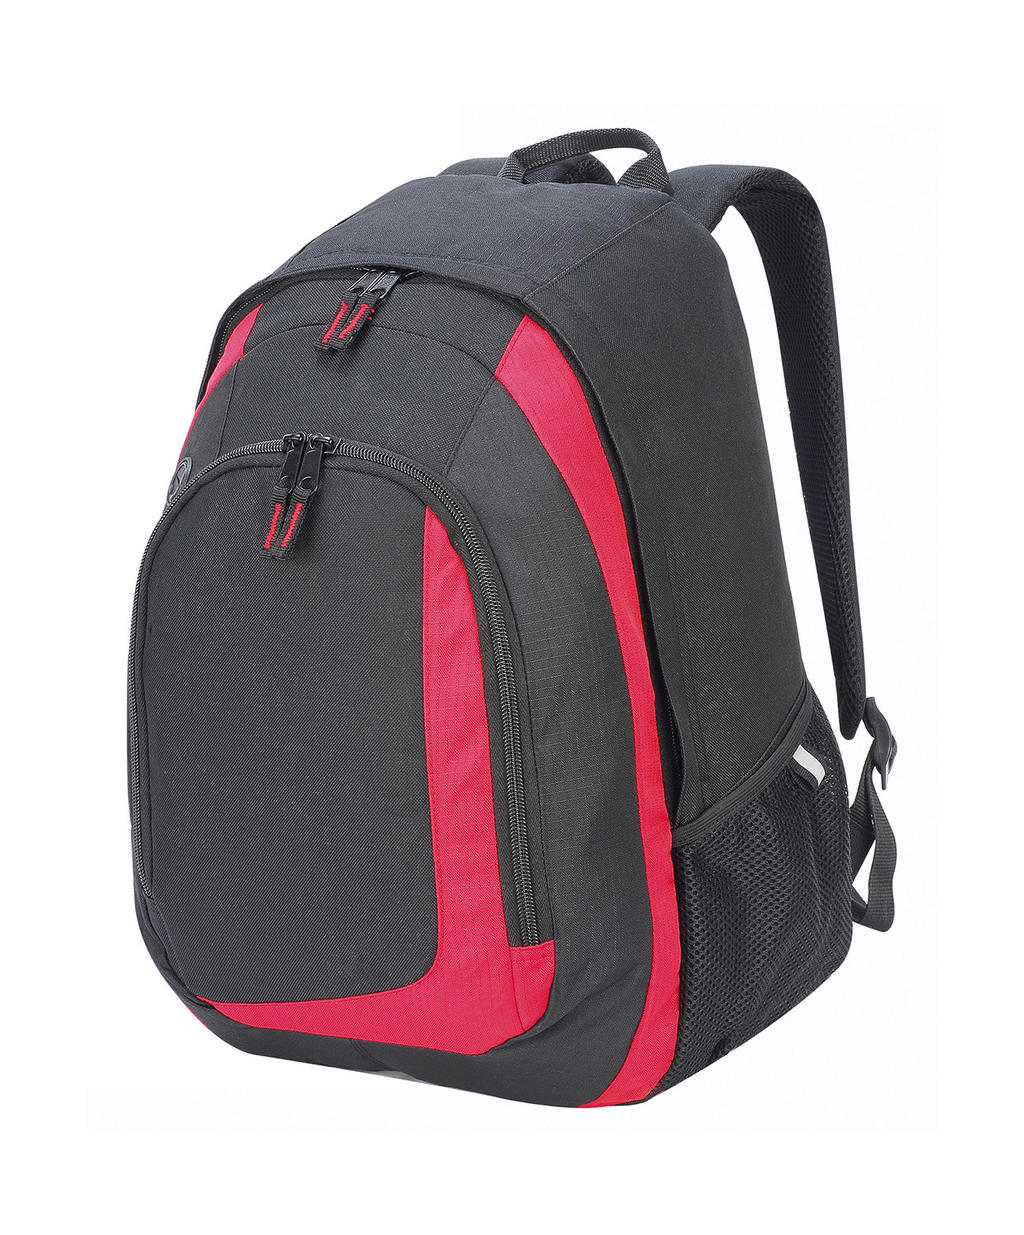  Geneva Backpack in Farbe Black/Red